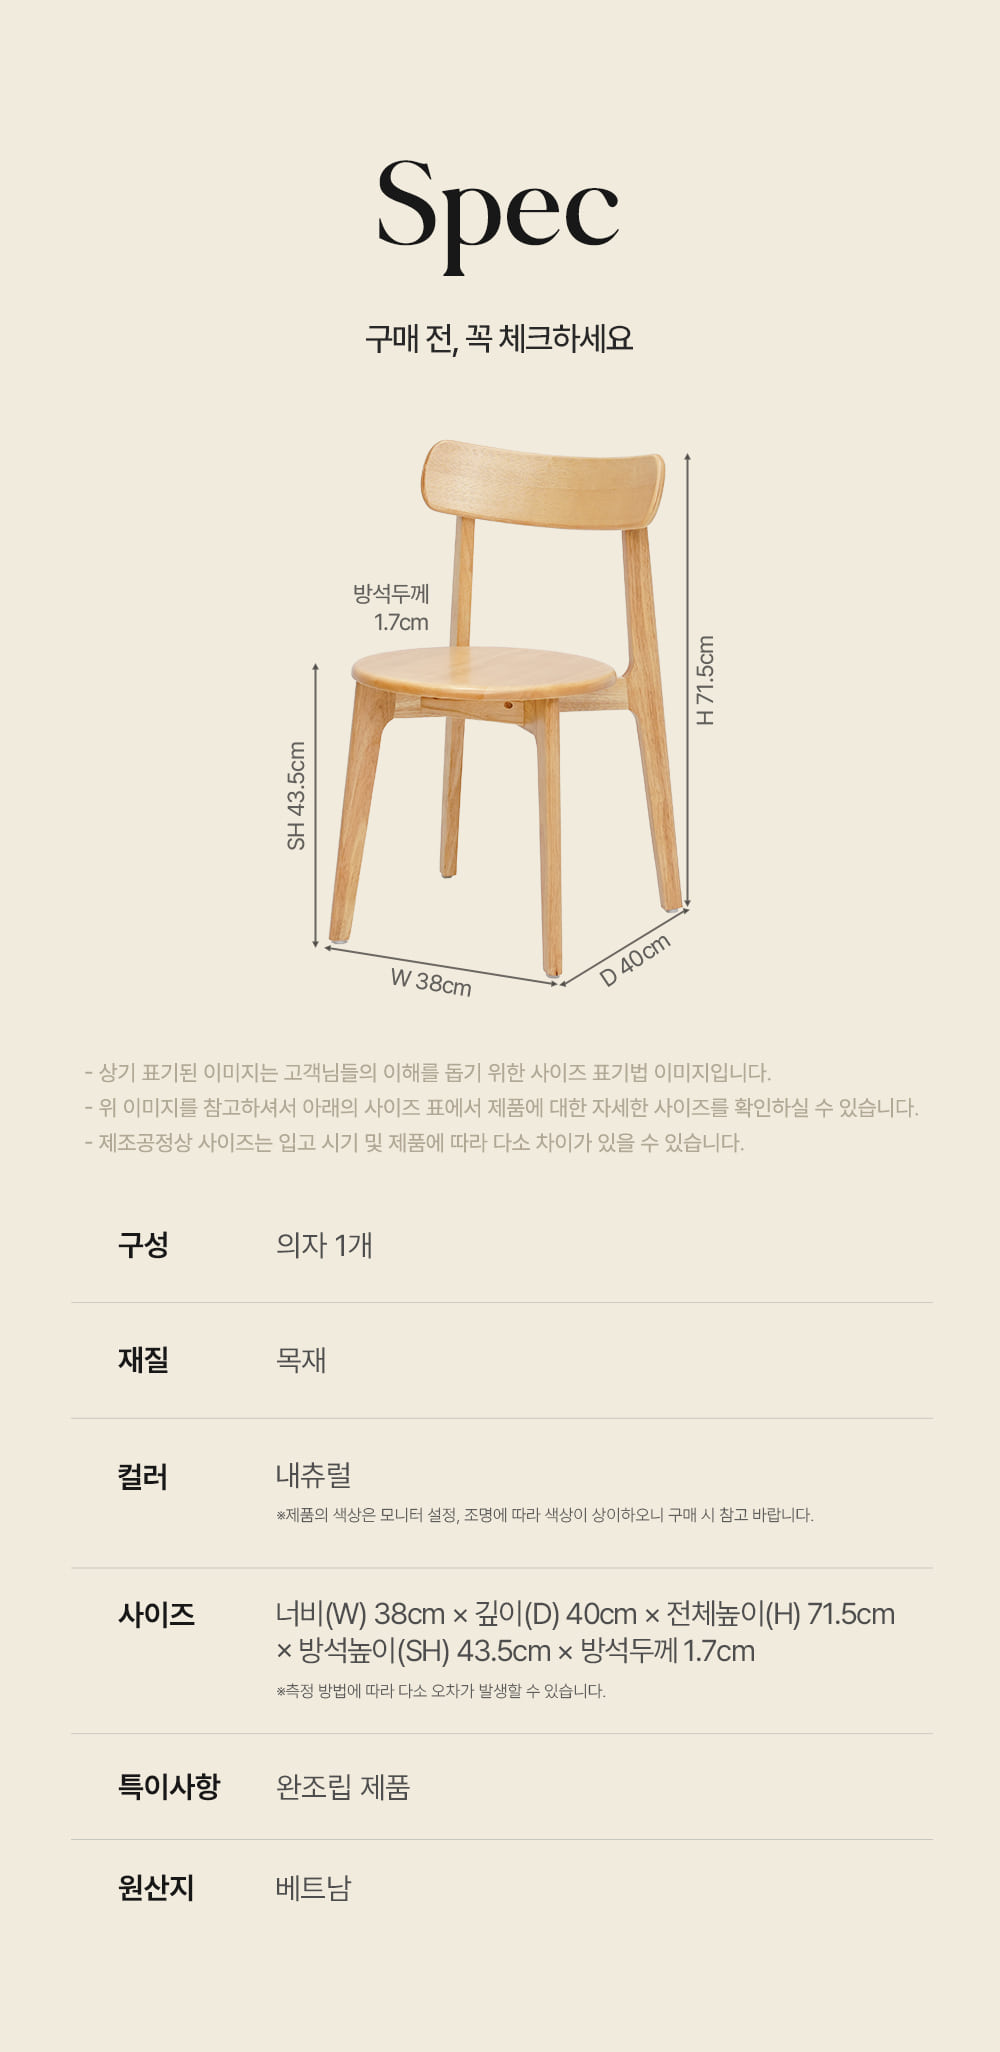 피카소가구 아트웨이 키워드 : 도나체어 목재의자 등받이의자 식당의자 카페의자 원목의자 작은의자